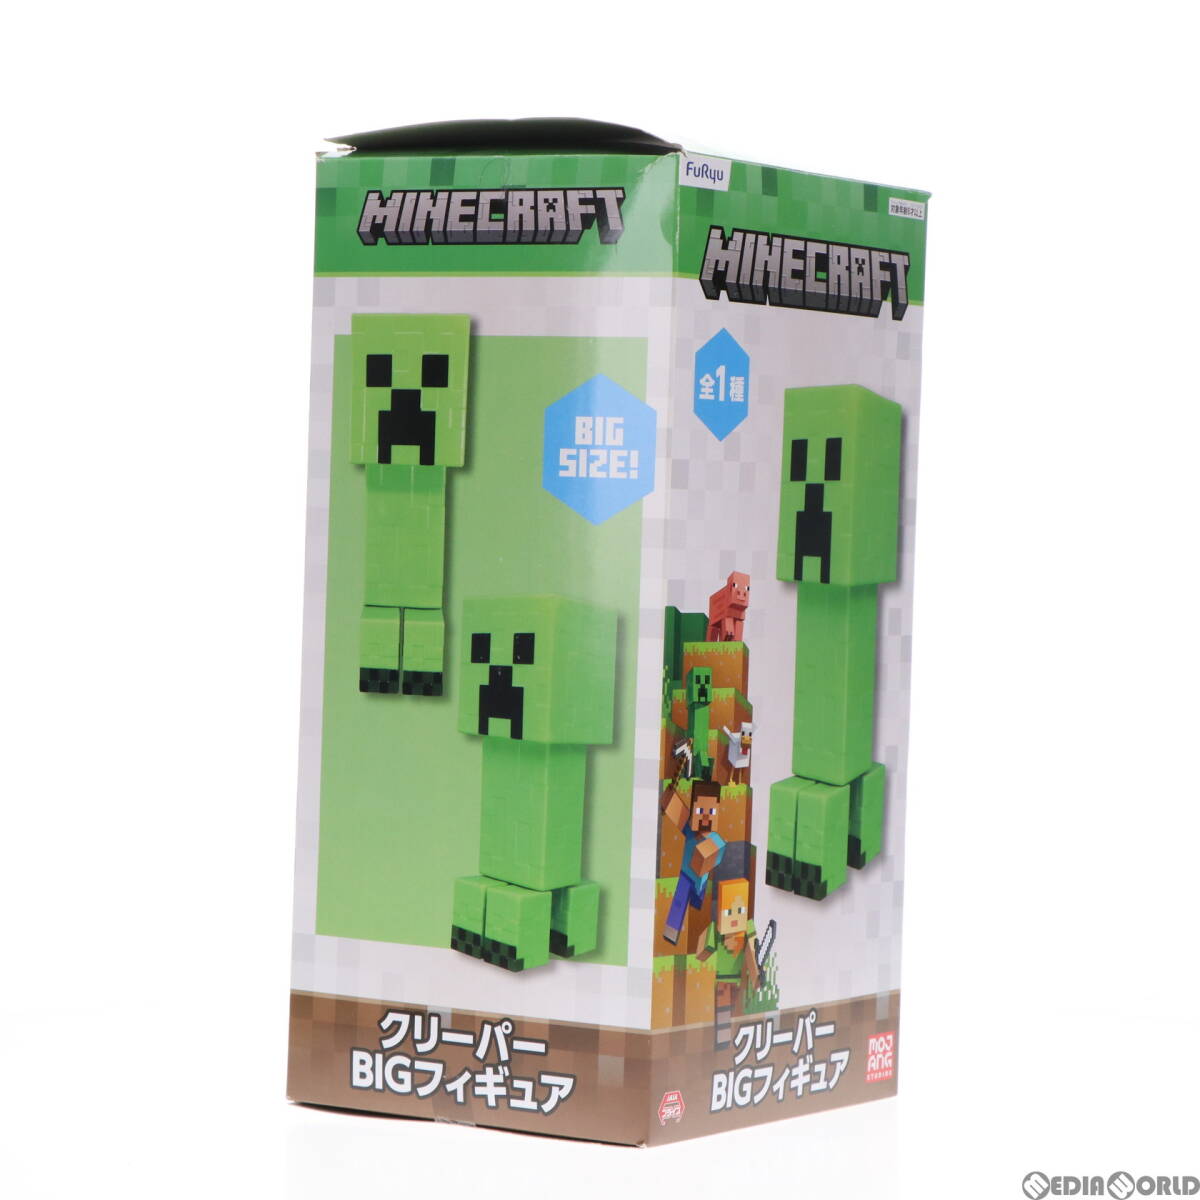 【中古】[FIG]クリーパー BIGフィギュア Minecraft(マインクラフト) プライズ(AMU-PRZ14893) フリュー(61728749)_画像5